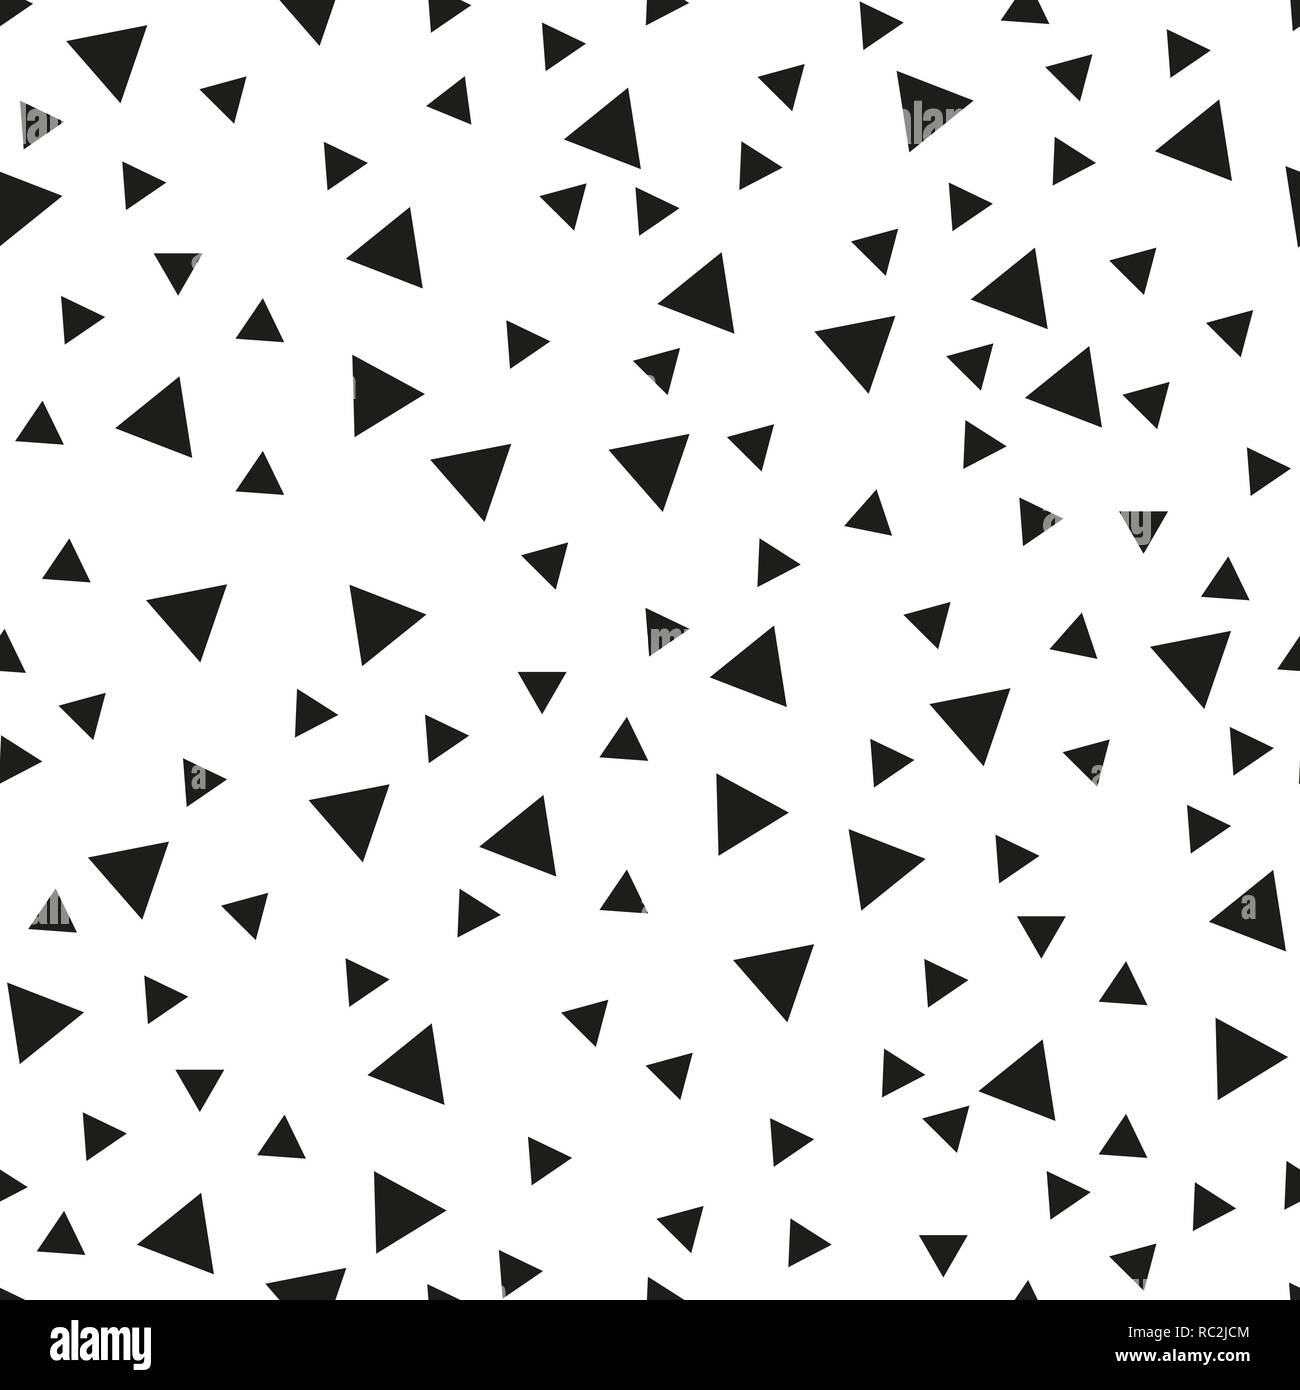 Fond transparent avec des triangles. Style minimaliste moderne. Une couleur noir sur blanc. Motif géométrique. Minimaliste pour l'impression sur tissu, papier, emballage, textile. Vector illustration Illustration de Vecteur